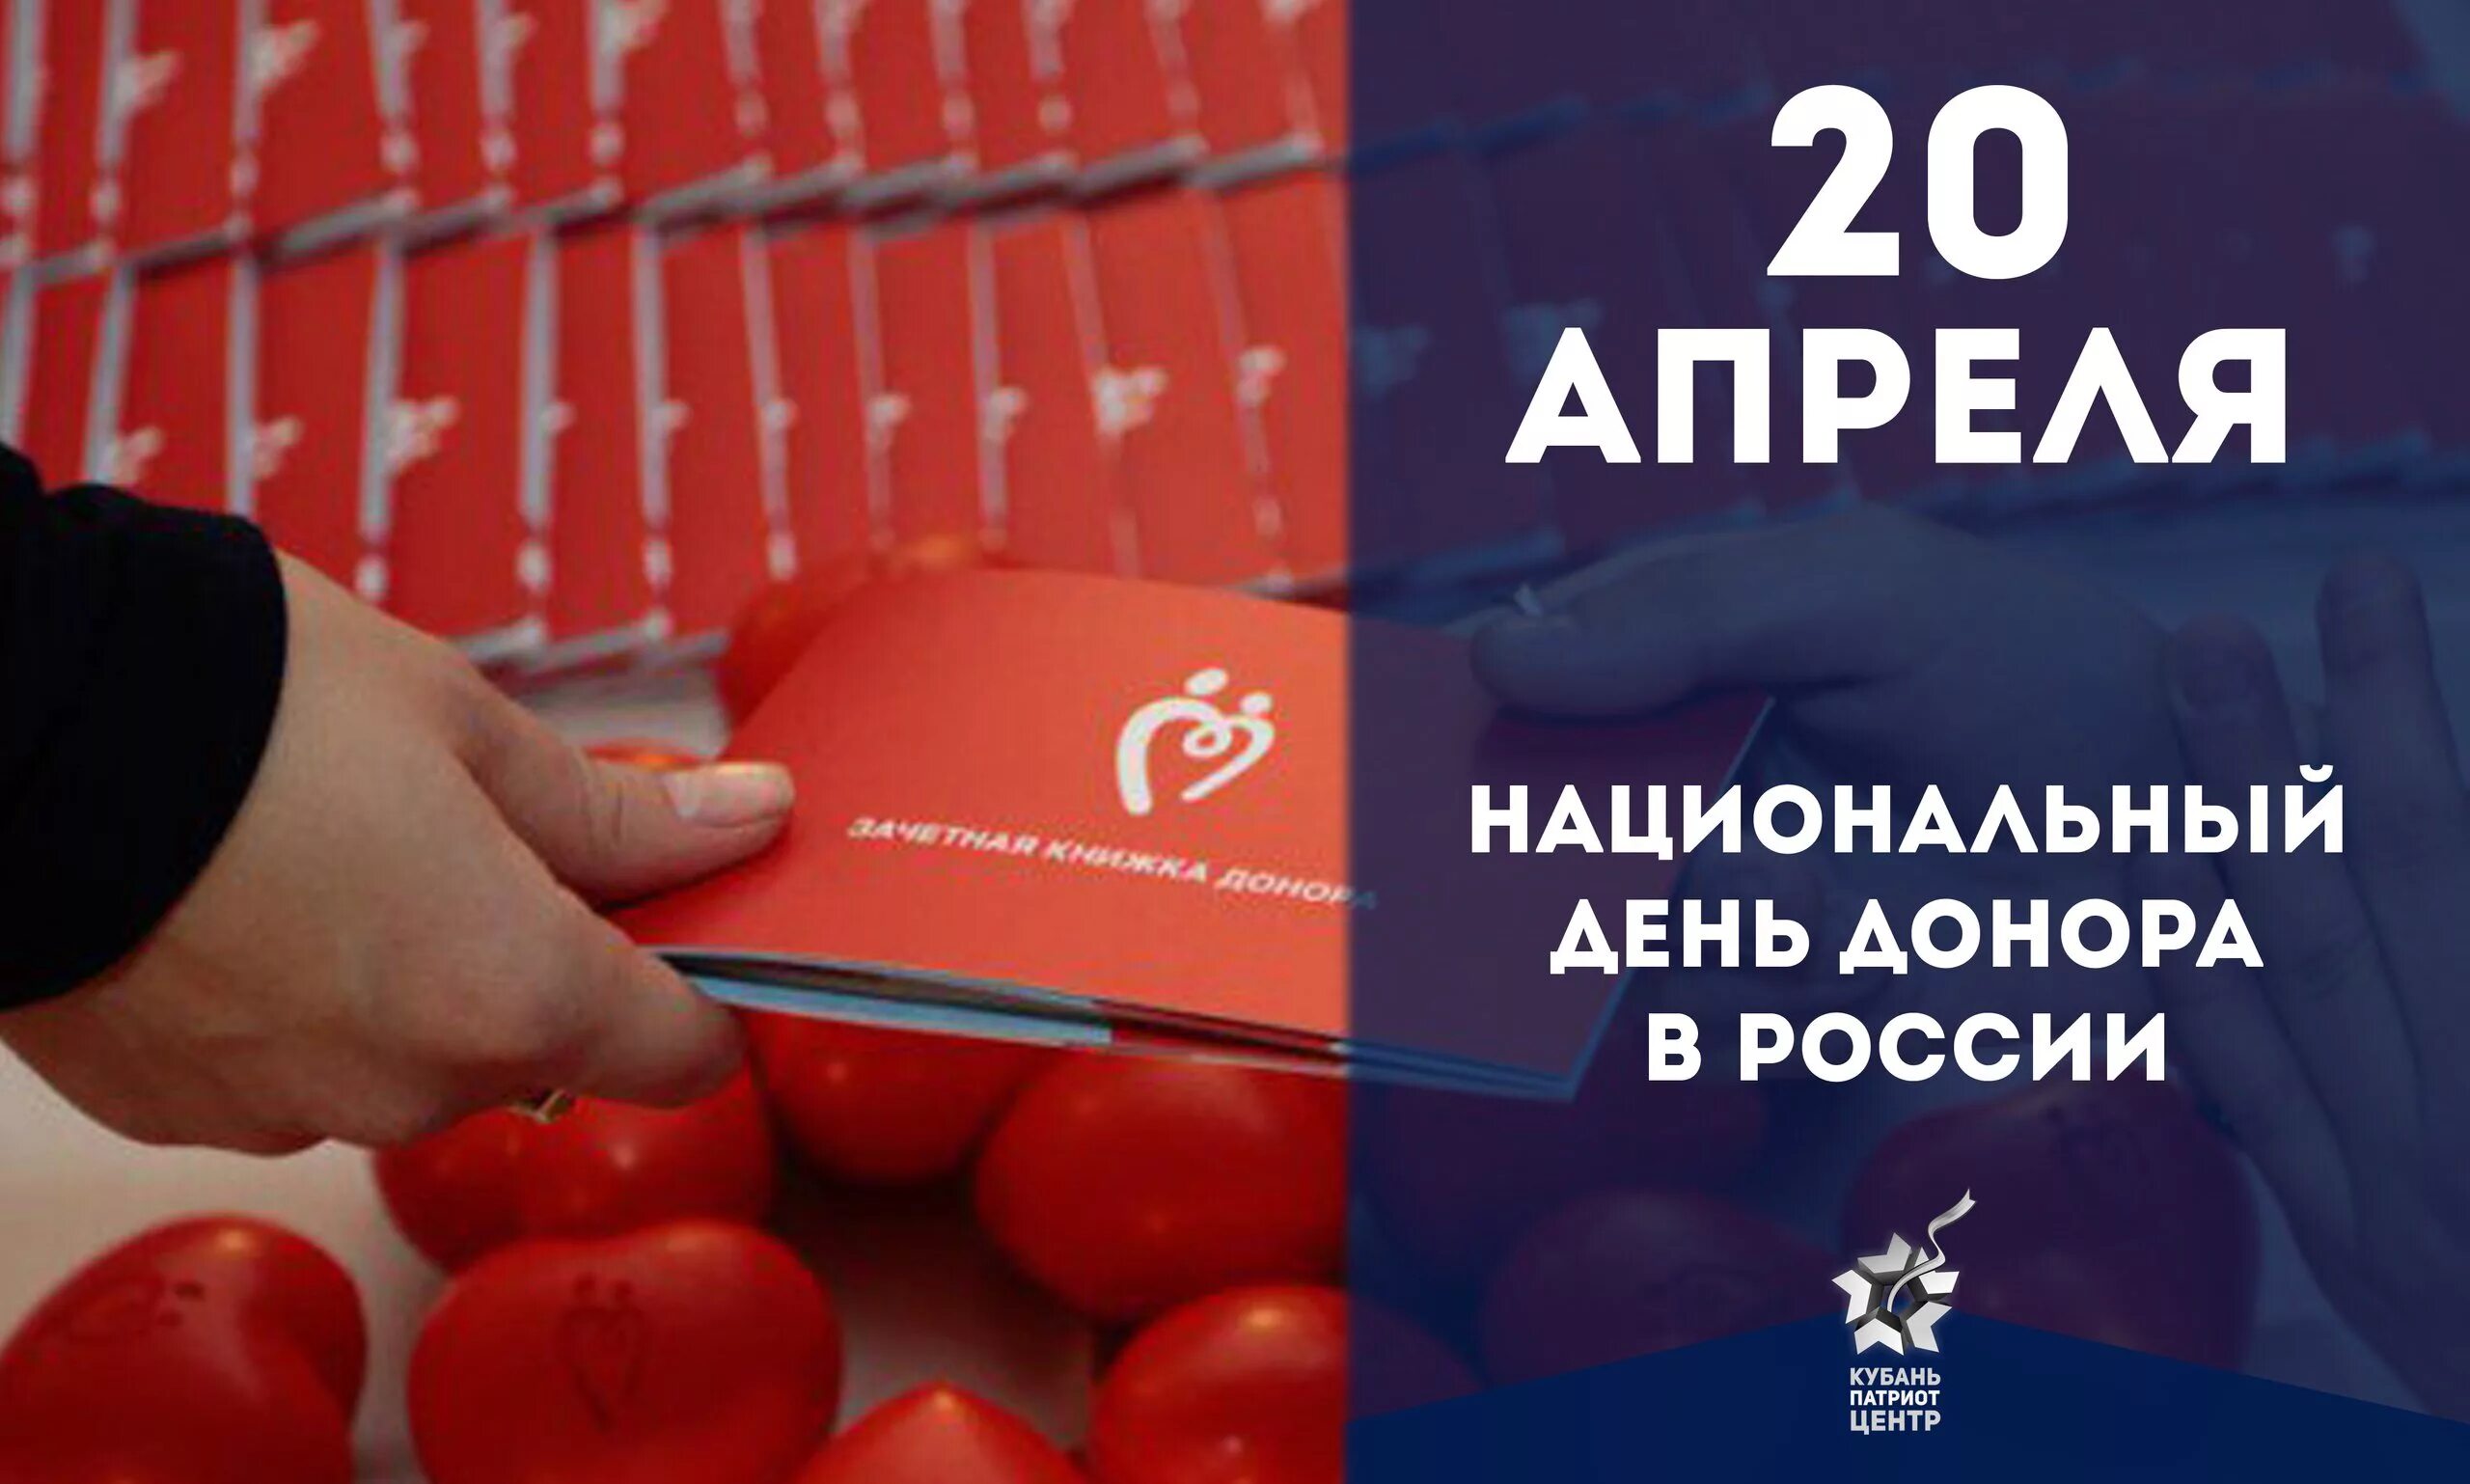 Национальный день донора. 20 Апреля день донора. Национальный день донора крови в России. Открытки с днём донора 20 апреля.